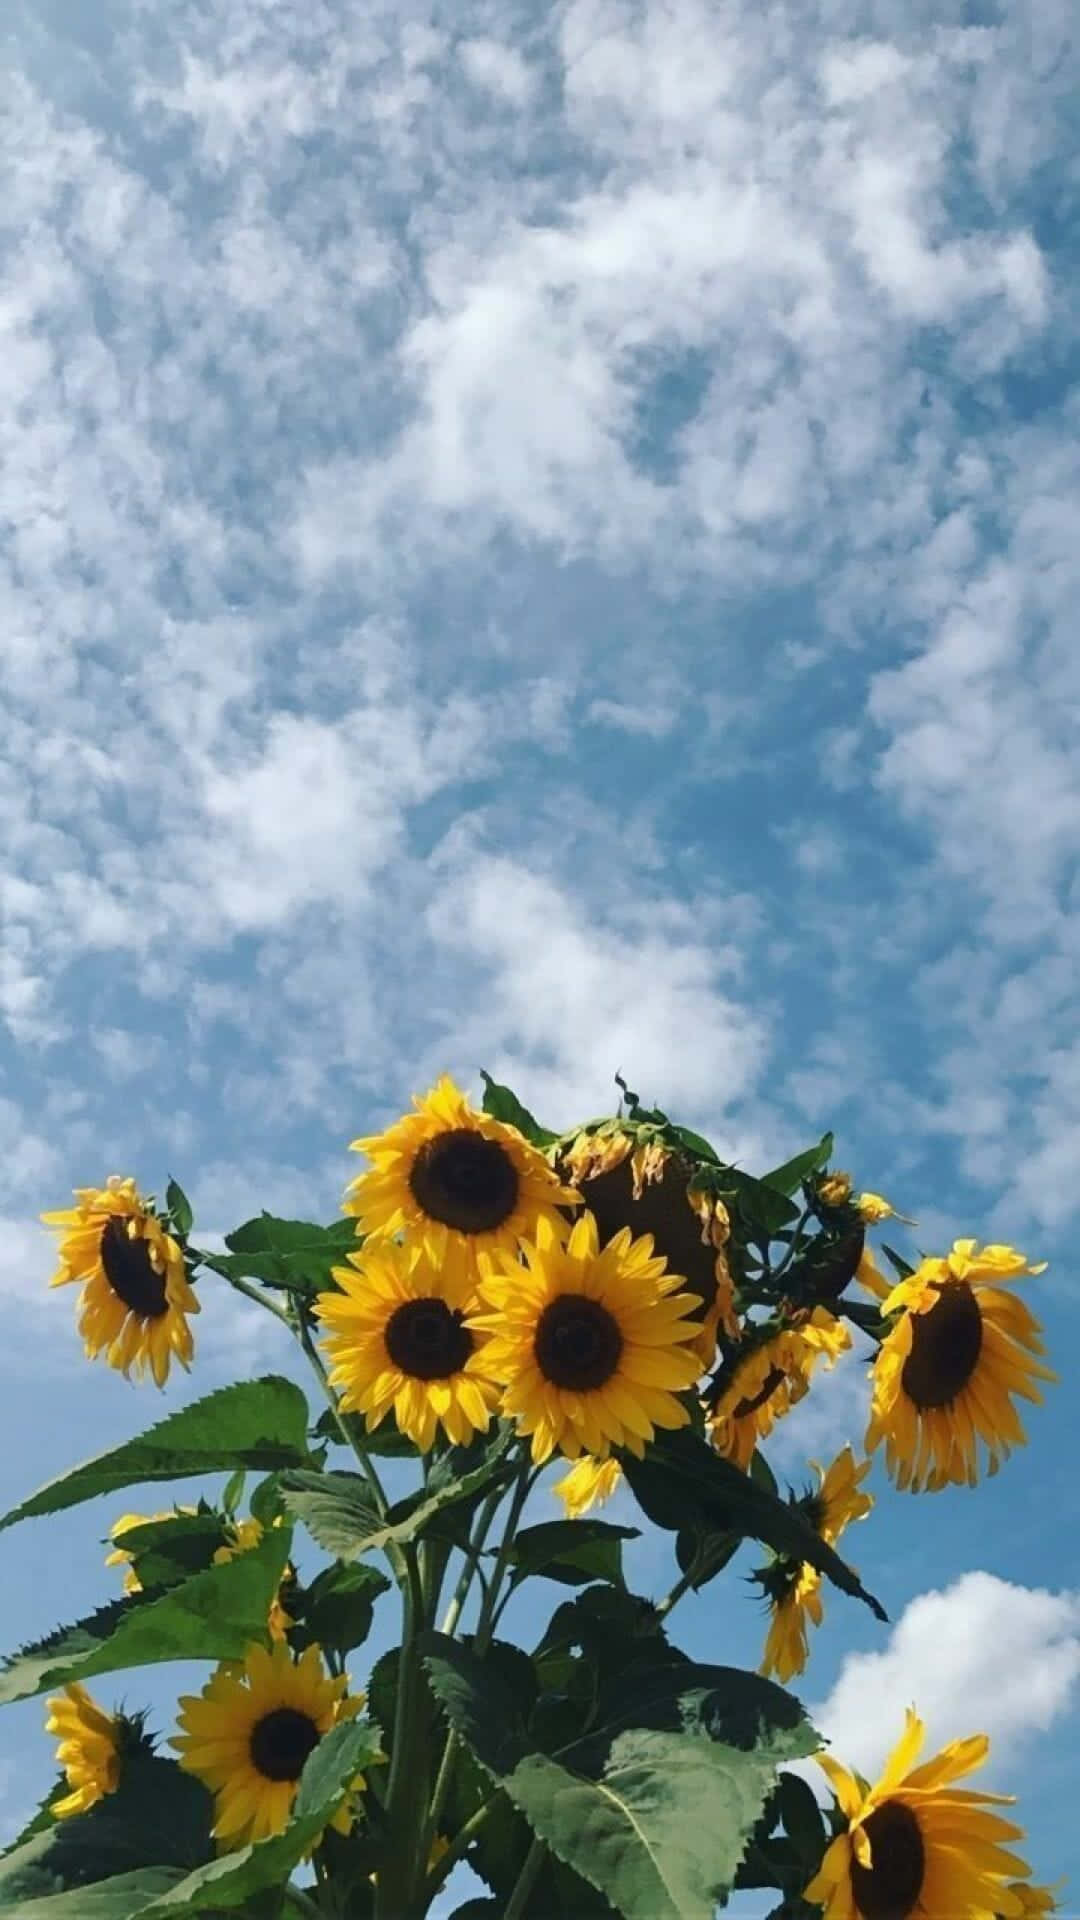 Erhellensie Ihren Tag Mit Einem Wunderschönen, Sonnenblumen-gelben Ästhetischen Hintergrundbild. Wallpaper